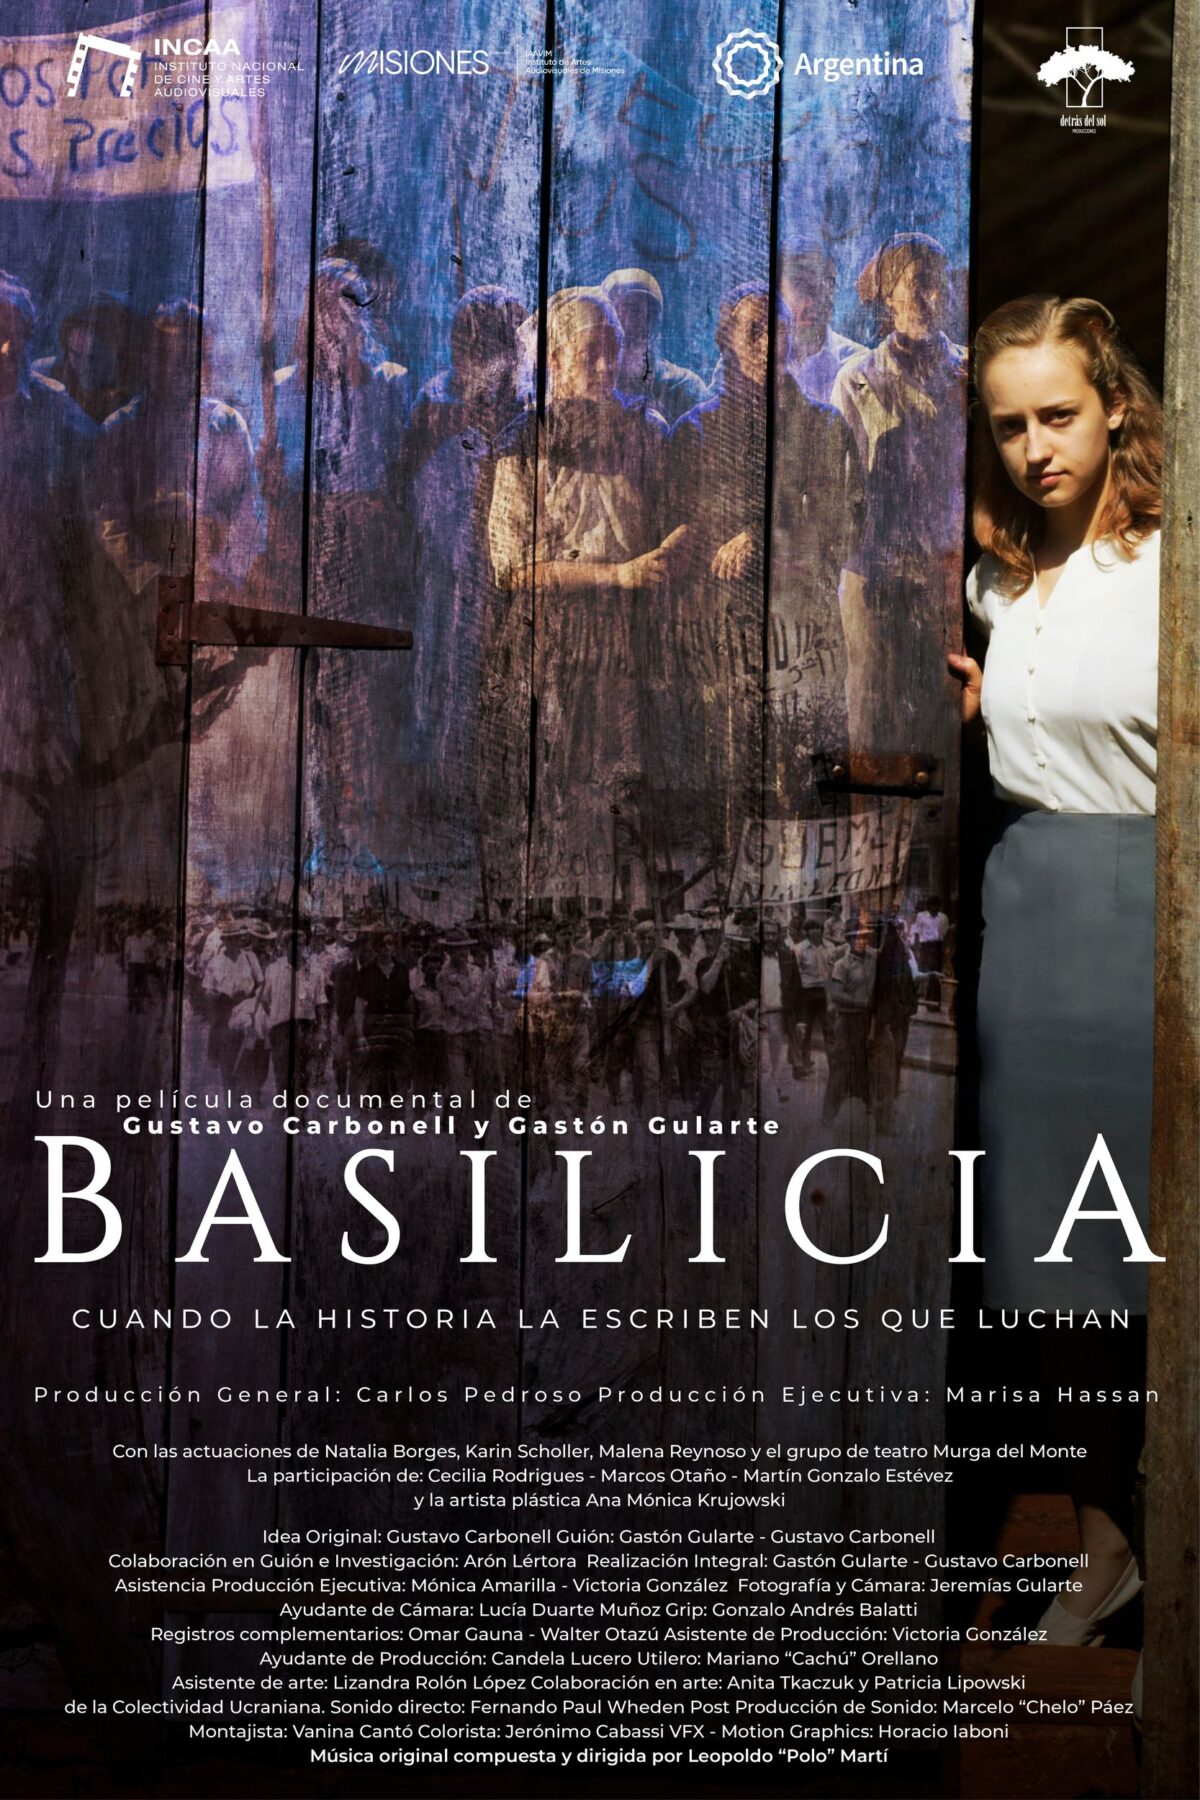 El largometraje misionero “Basilicia” fue distinguido como Mejor Documental en el Festival Iberoamericano de Caracas